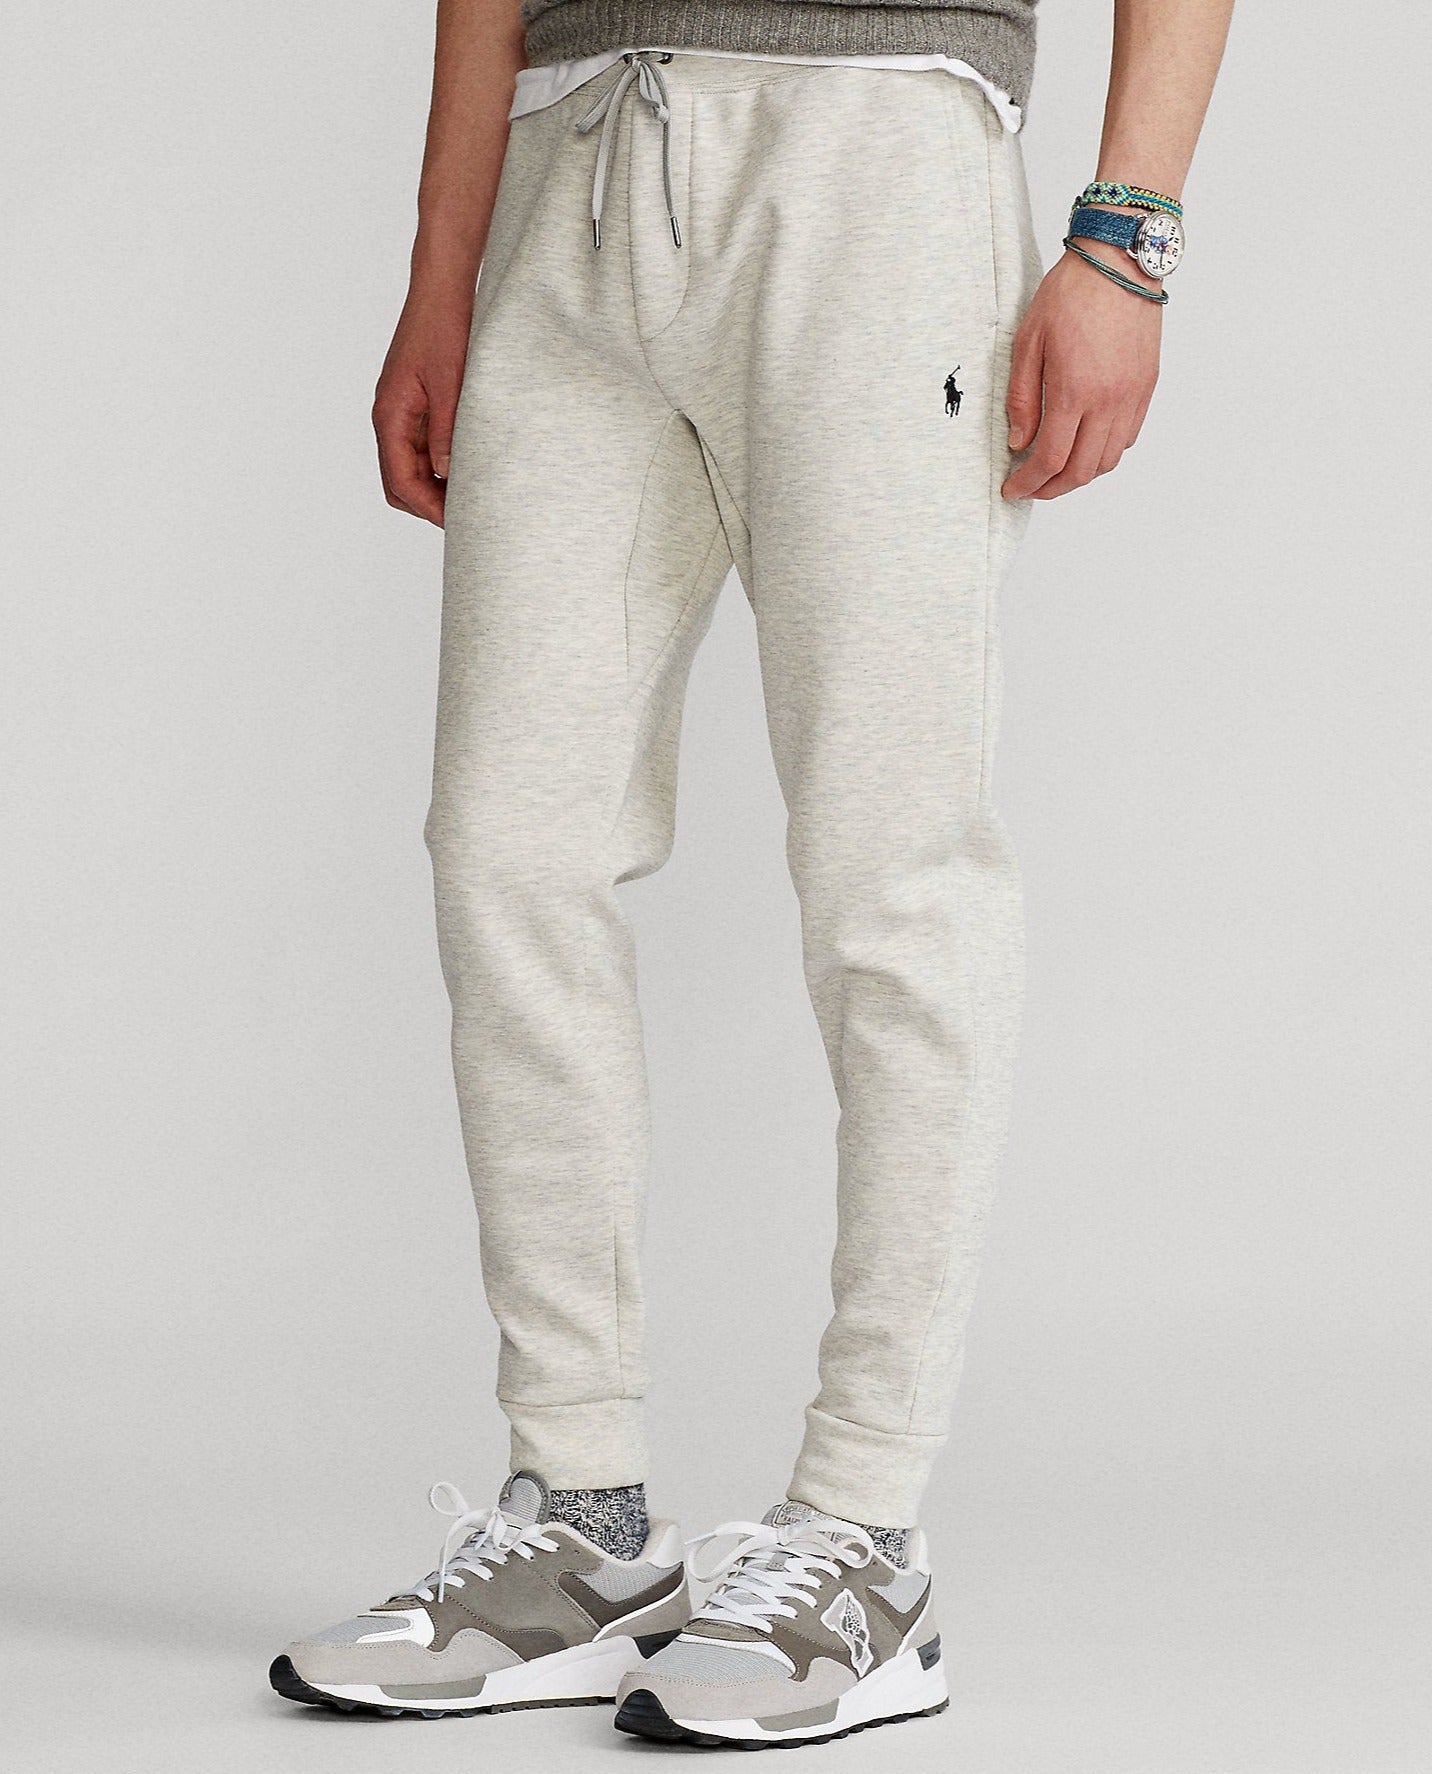 Pantalon de jogging pour homme Ralph Lauren gris clair